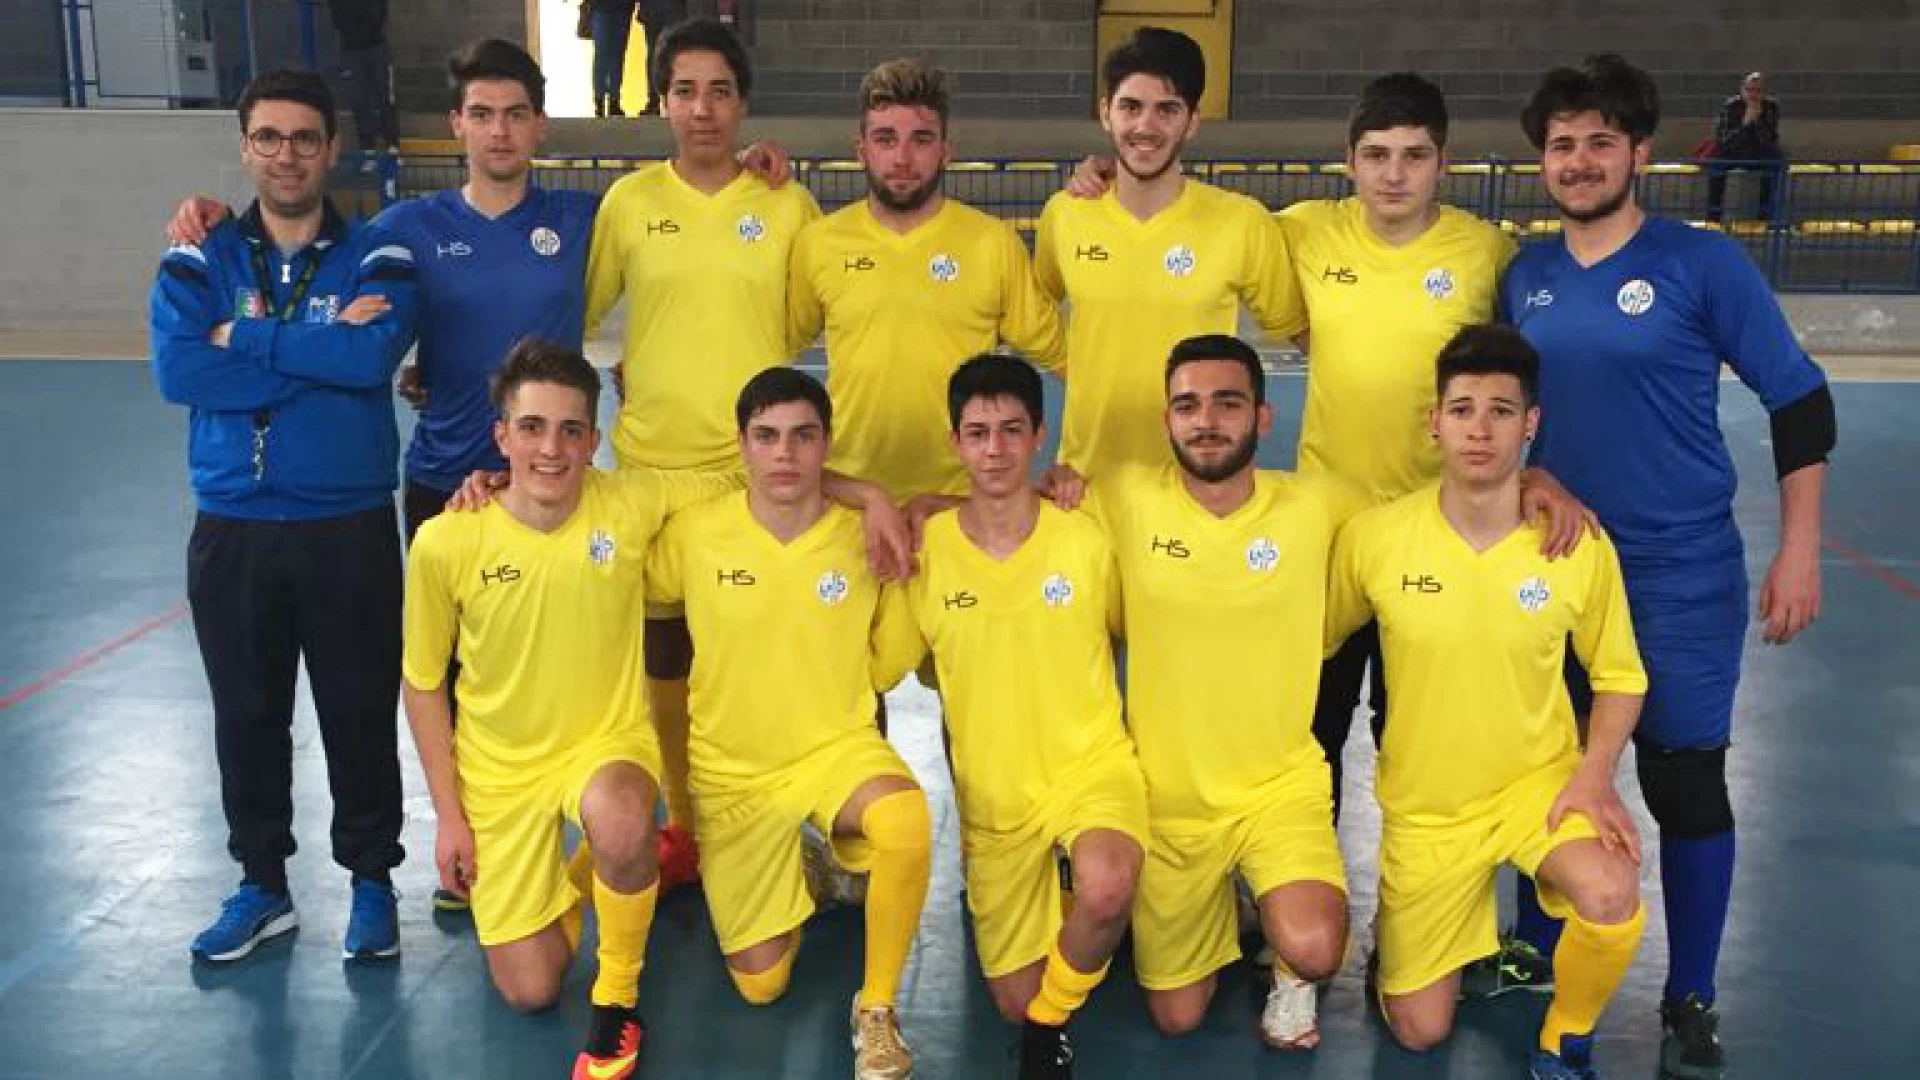 Torneo delle regioni calcio a 5, i ragazzi di mister Sanginario battono Bolzano e Friuli Venezia Giulia nei match di esordio. Incredibile inizio della formazione molisana.